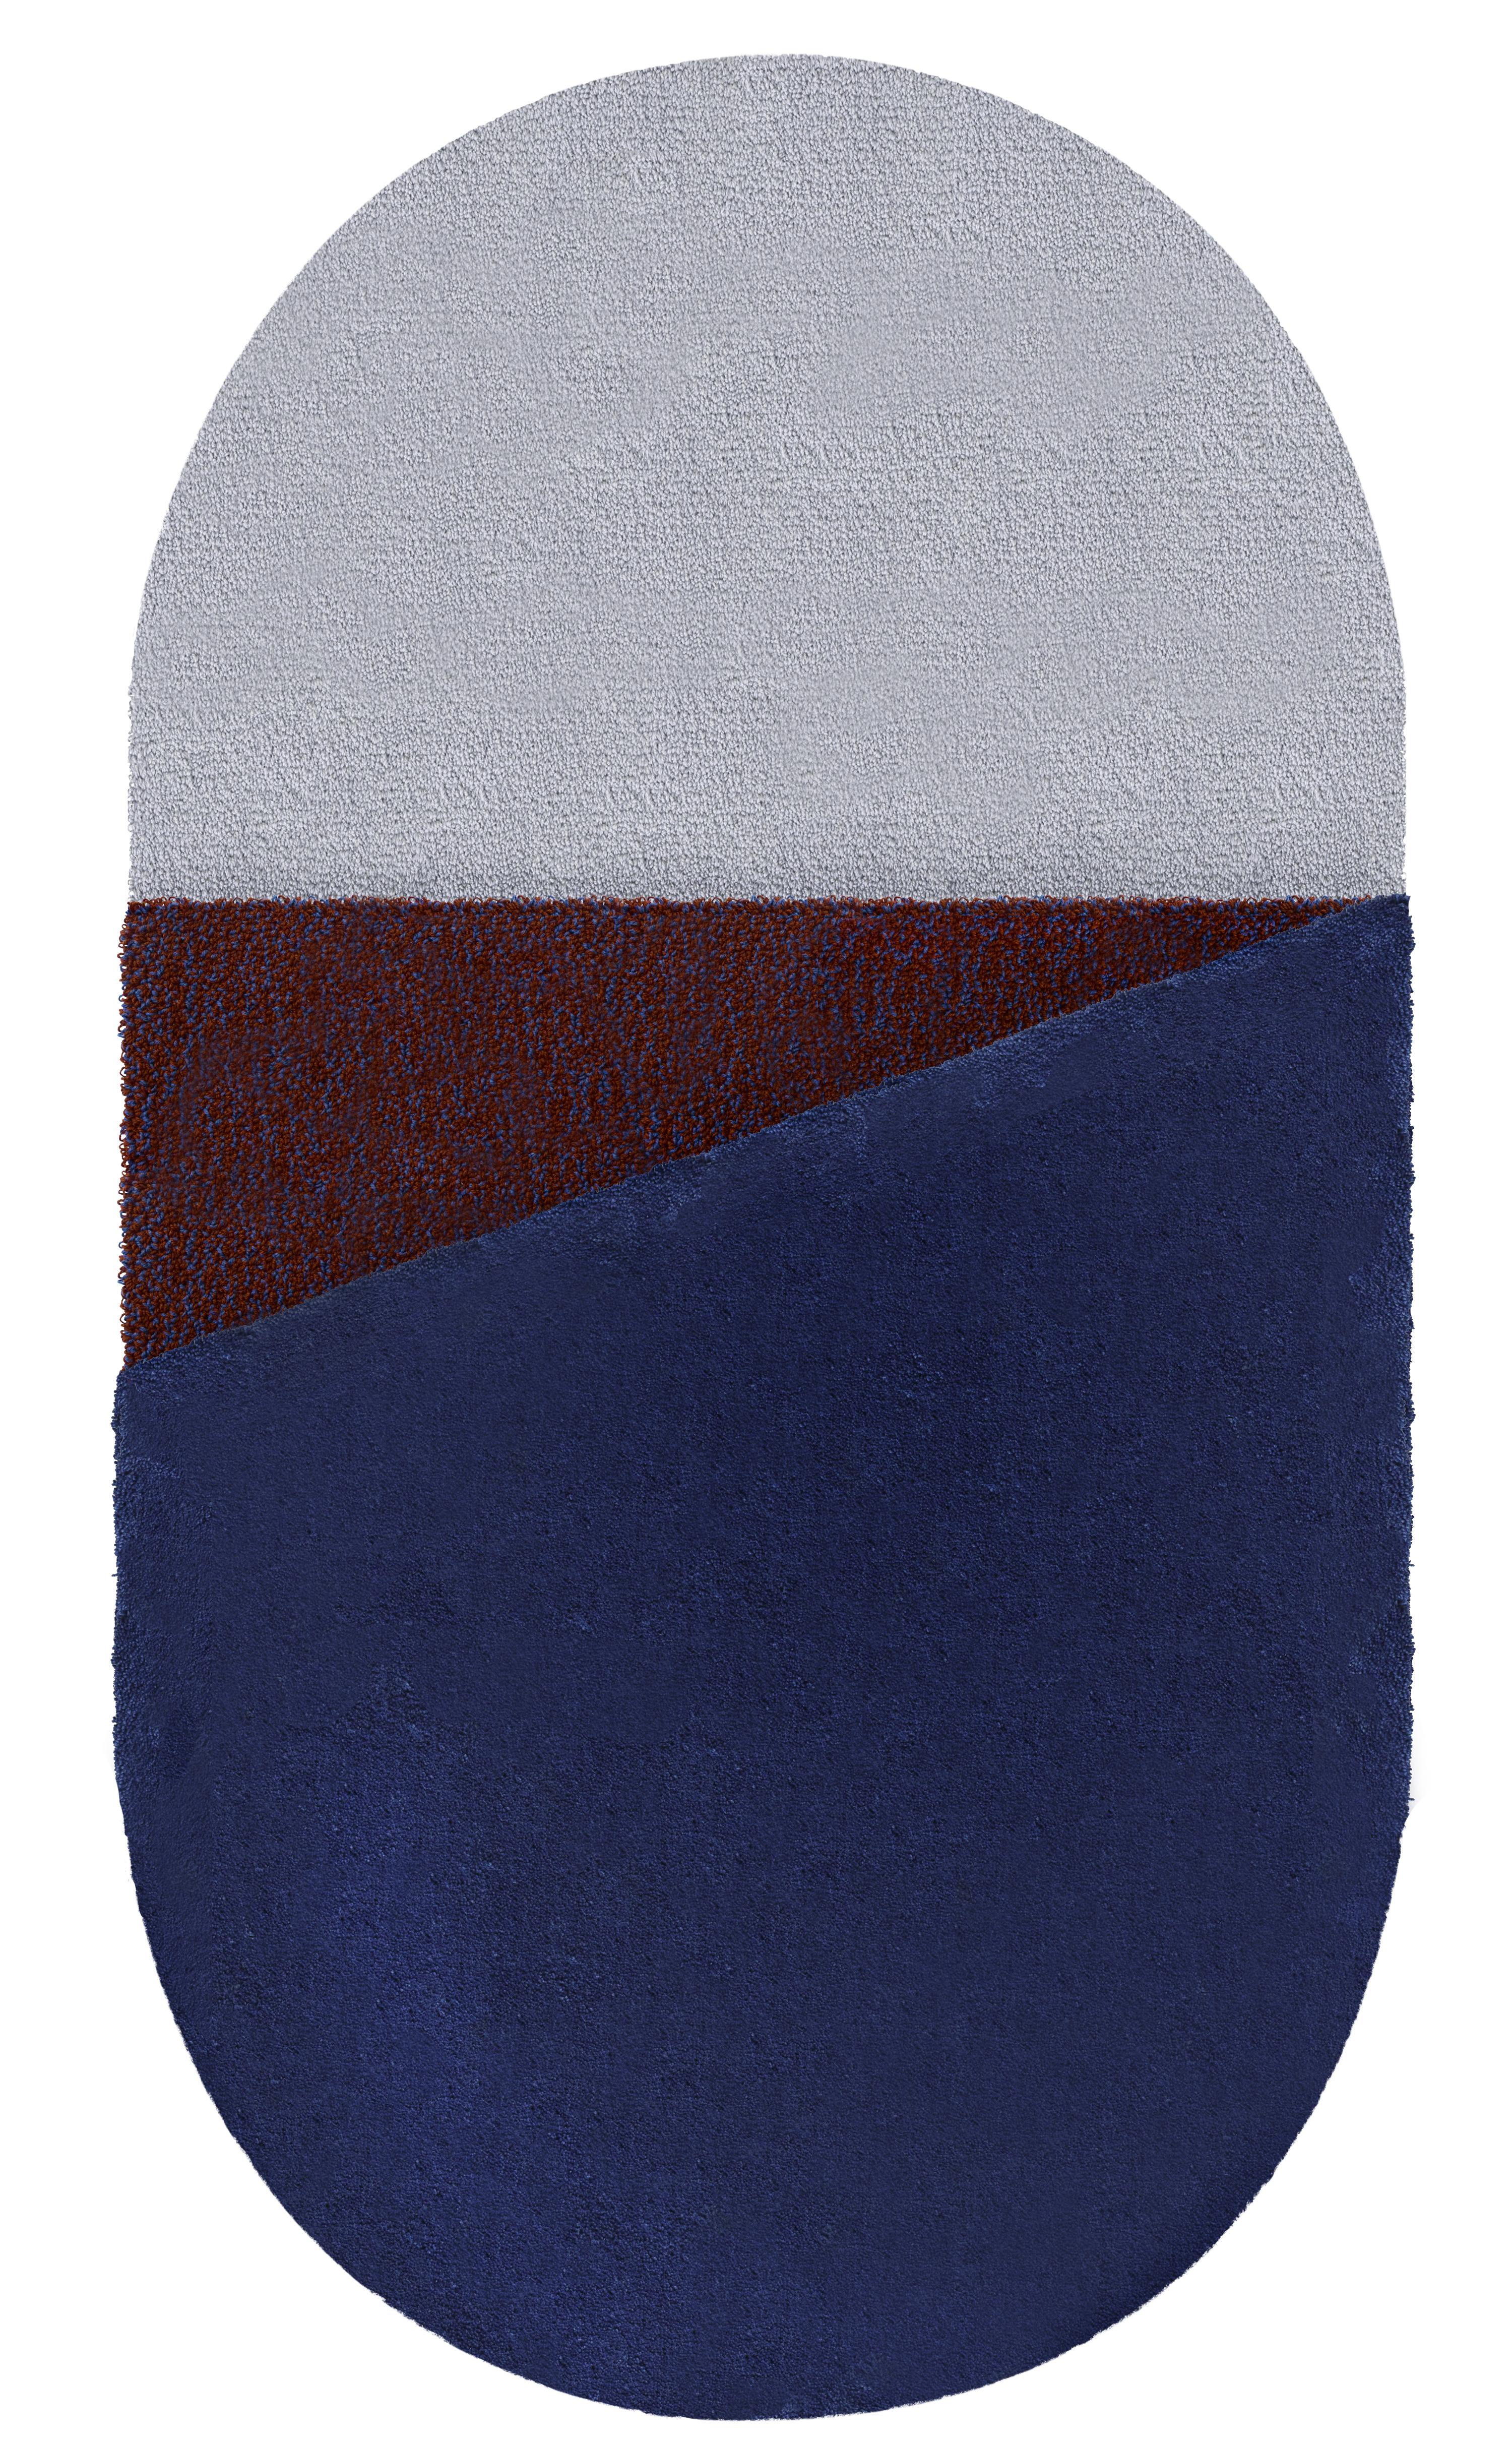 Wool Small Blue Oci Triptych Rug by Seraina Lareida